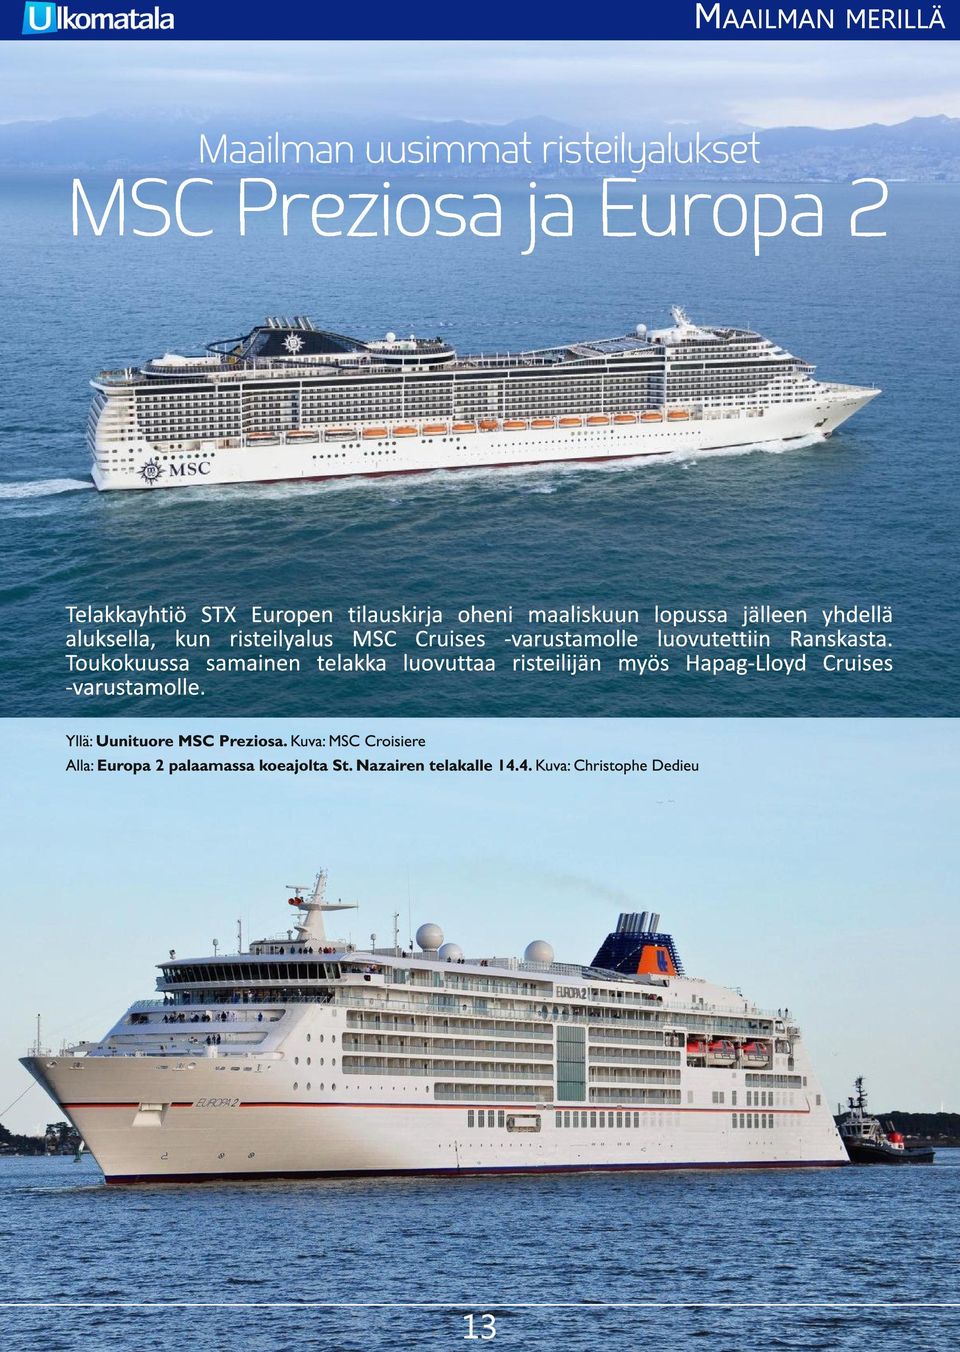 Kuva: MSC Croisiere Alla: Europa 2 palaamassa